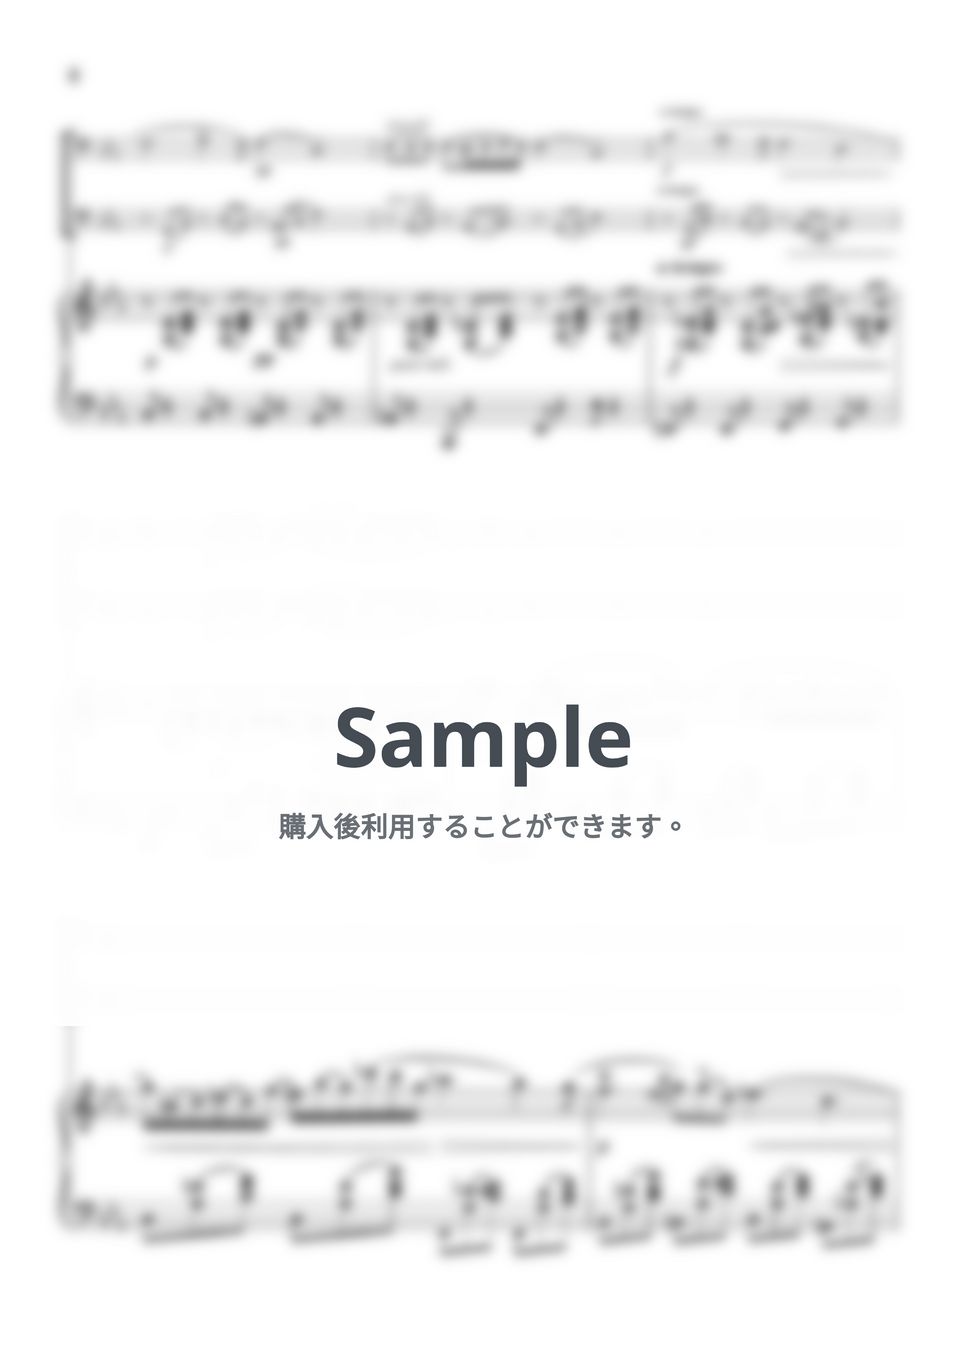 ショパン - ノクターン第2番 (ピアノ トリオ/ファゴットデュオ) by pfkaori